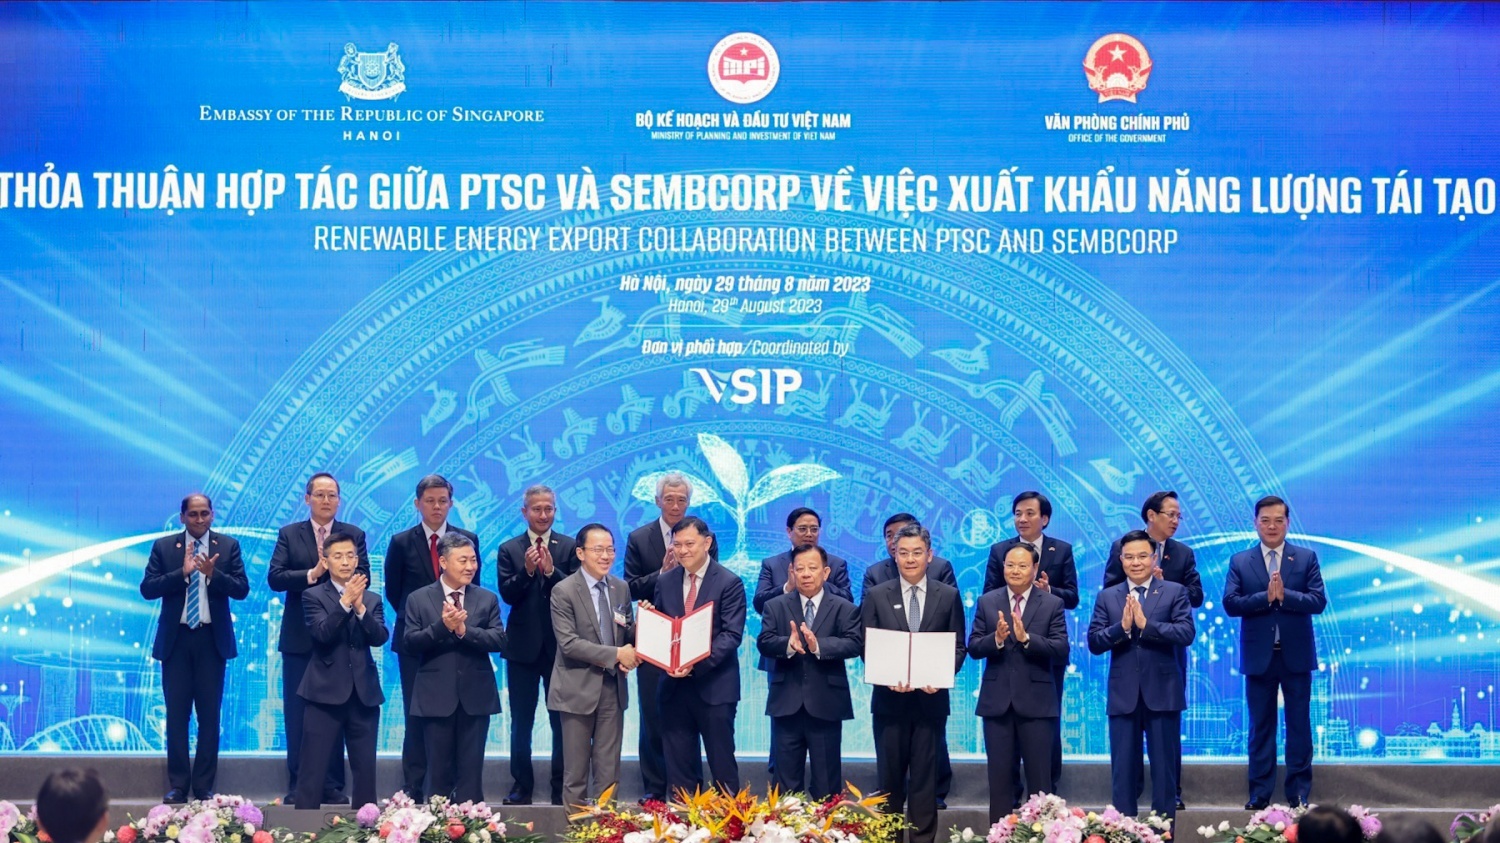 Tập đoàn Dầu khí Quốc gia Việt Nam: Vững chí bền lòng, đi trong gió ngược